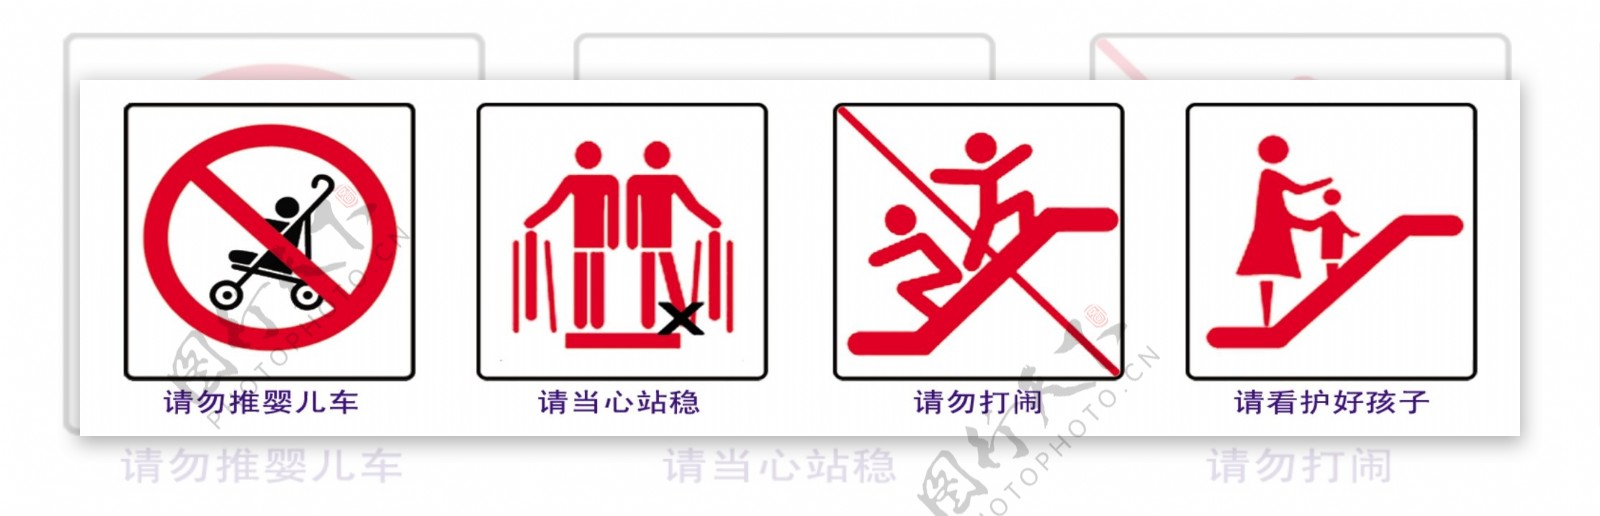 电梯警示标志